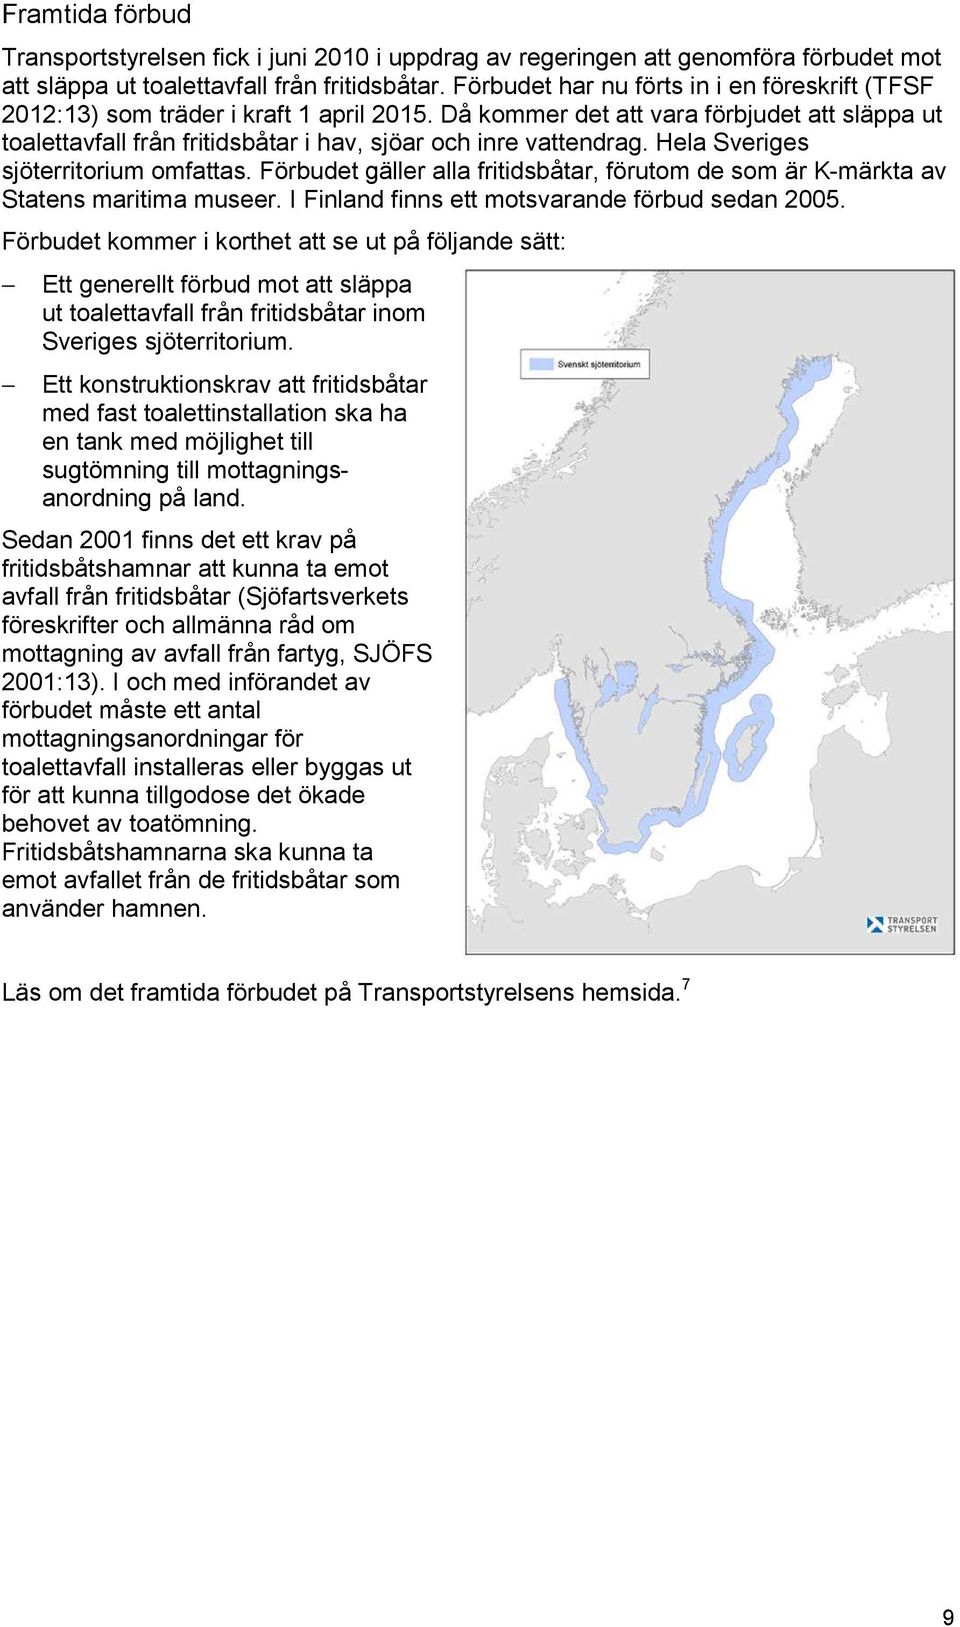 Då kommer det att vara förbjudet att släppa ut toalettavfall från fritidsbåtar i hav, sjöar och inre vattendrag. Hela Sveriges sjöterritorium omfattas.